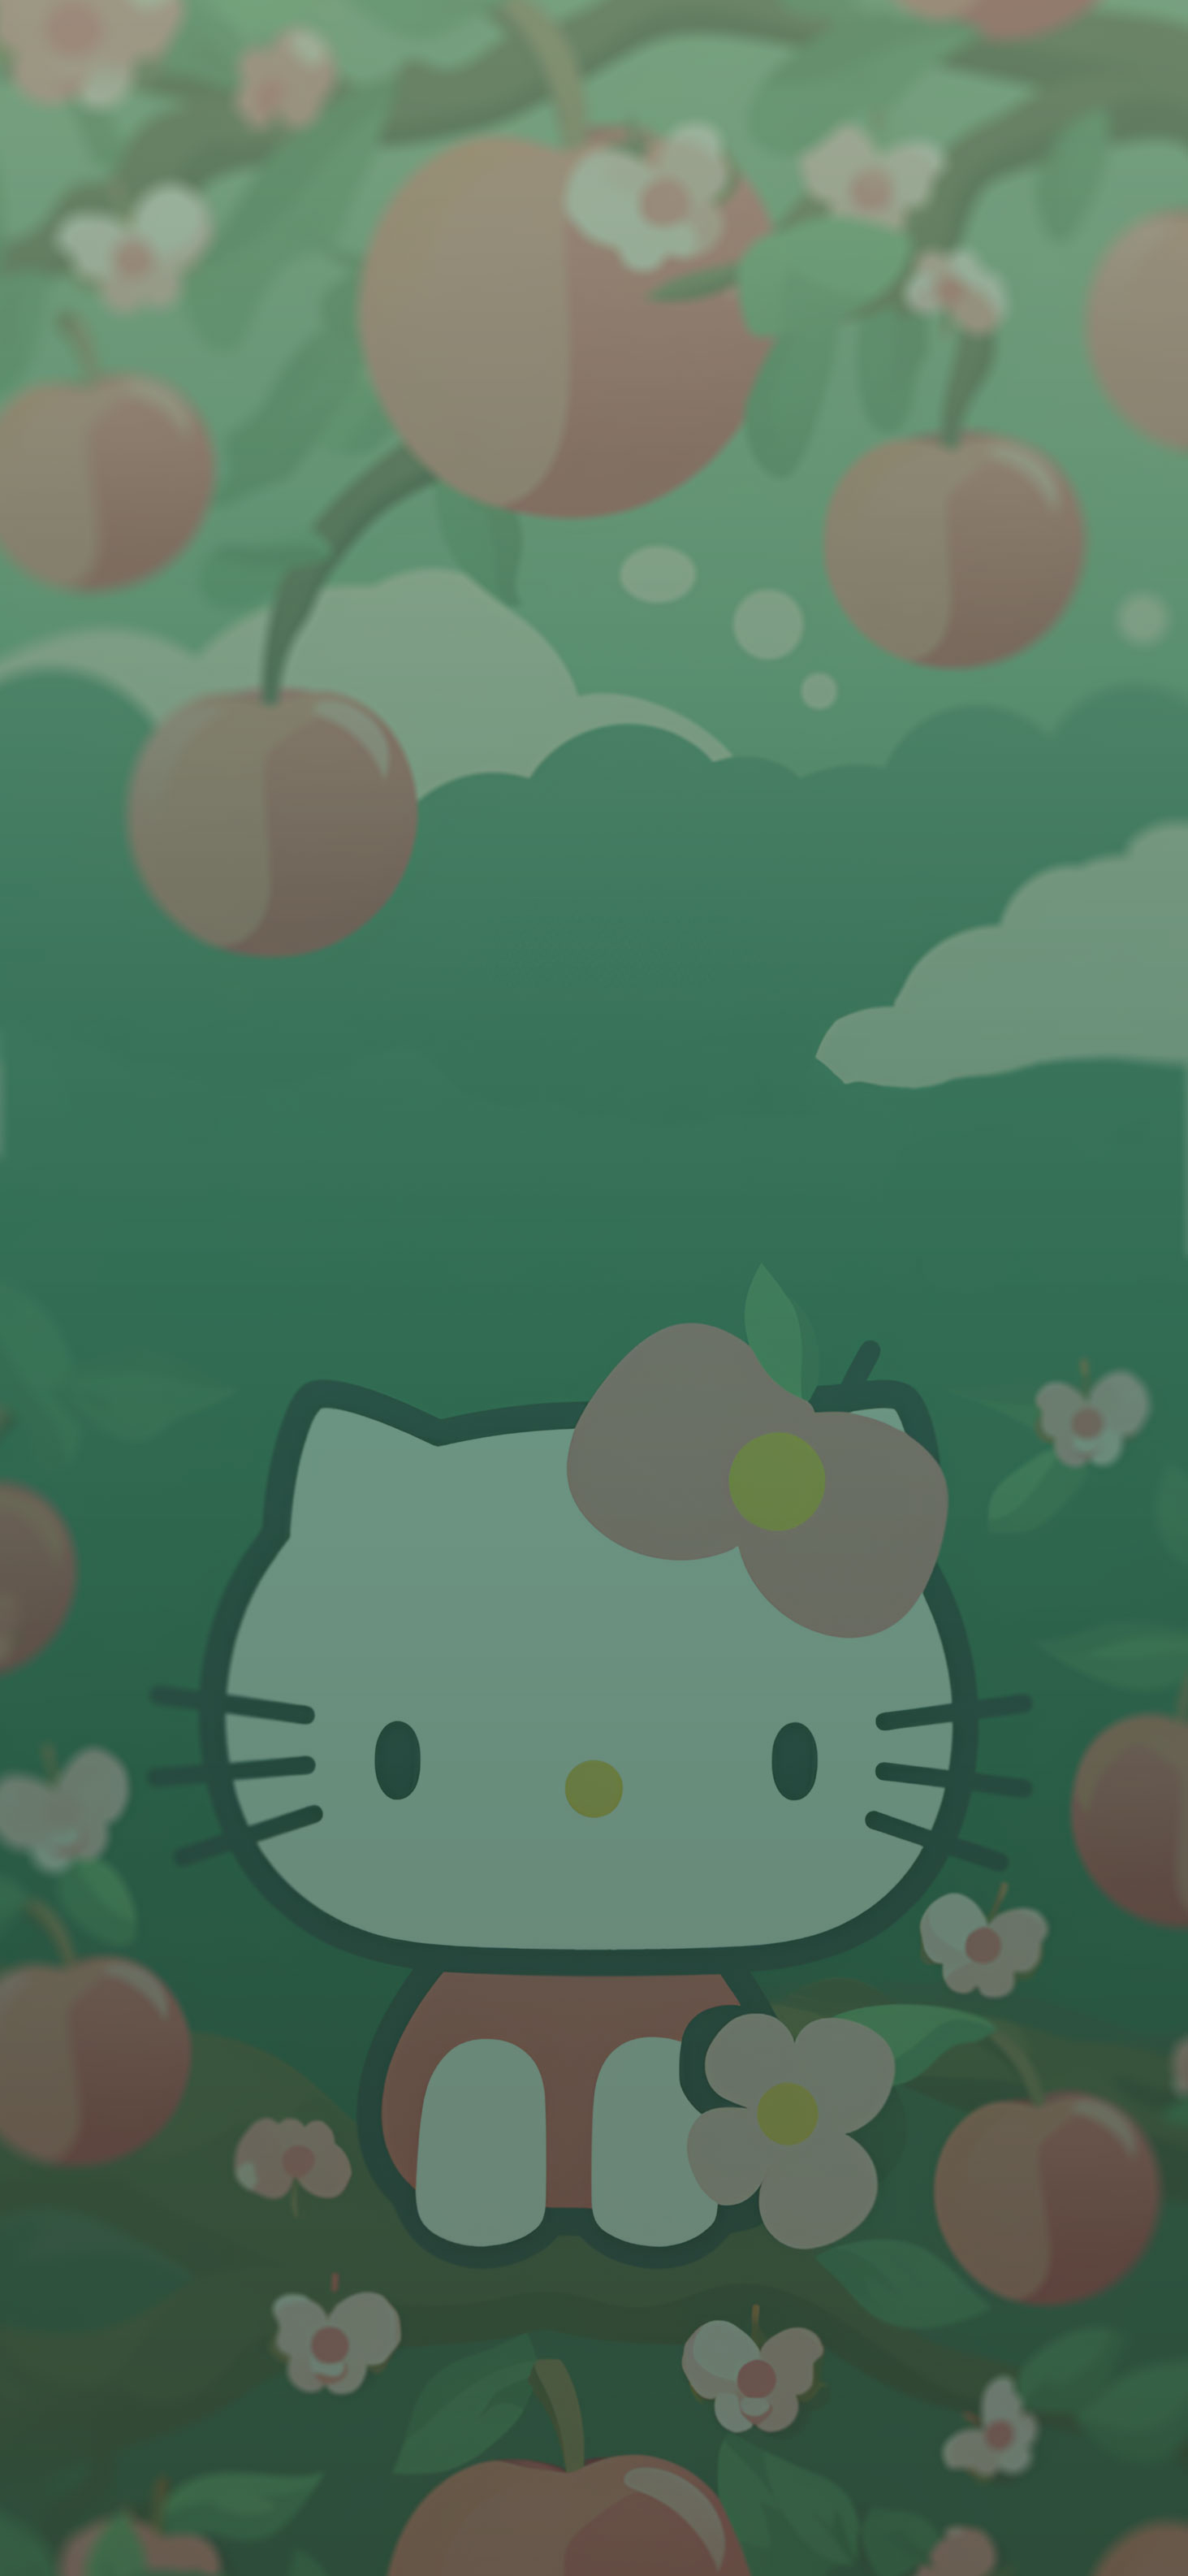 Sanrio Hello Kitty on Apple Tree Wallpapers - Hello Kitty Wallpapers